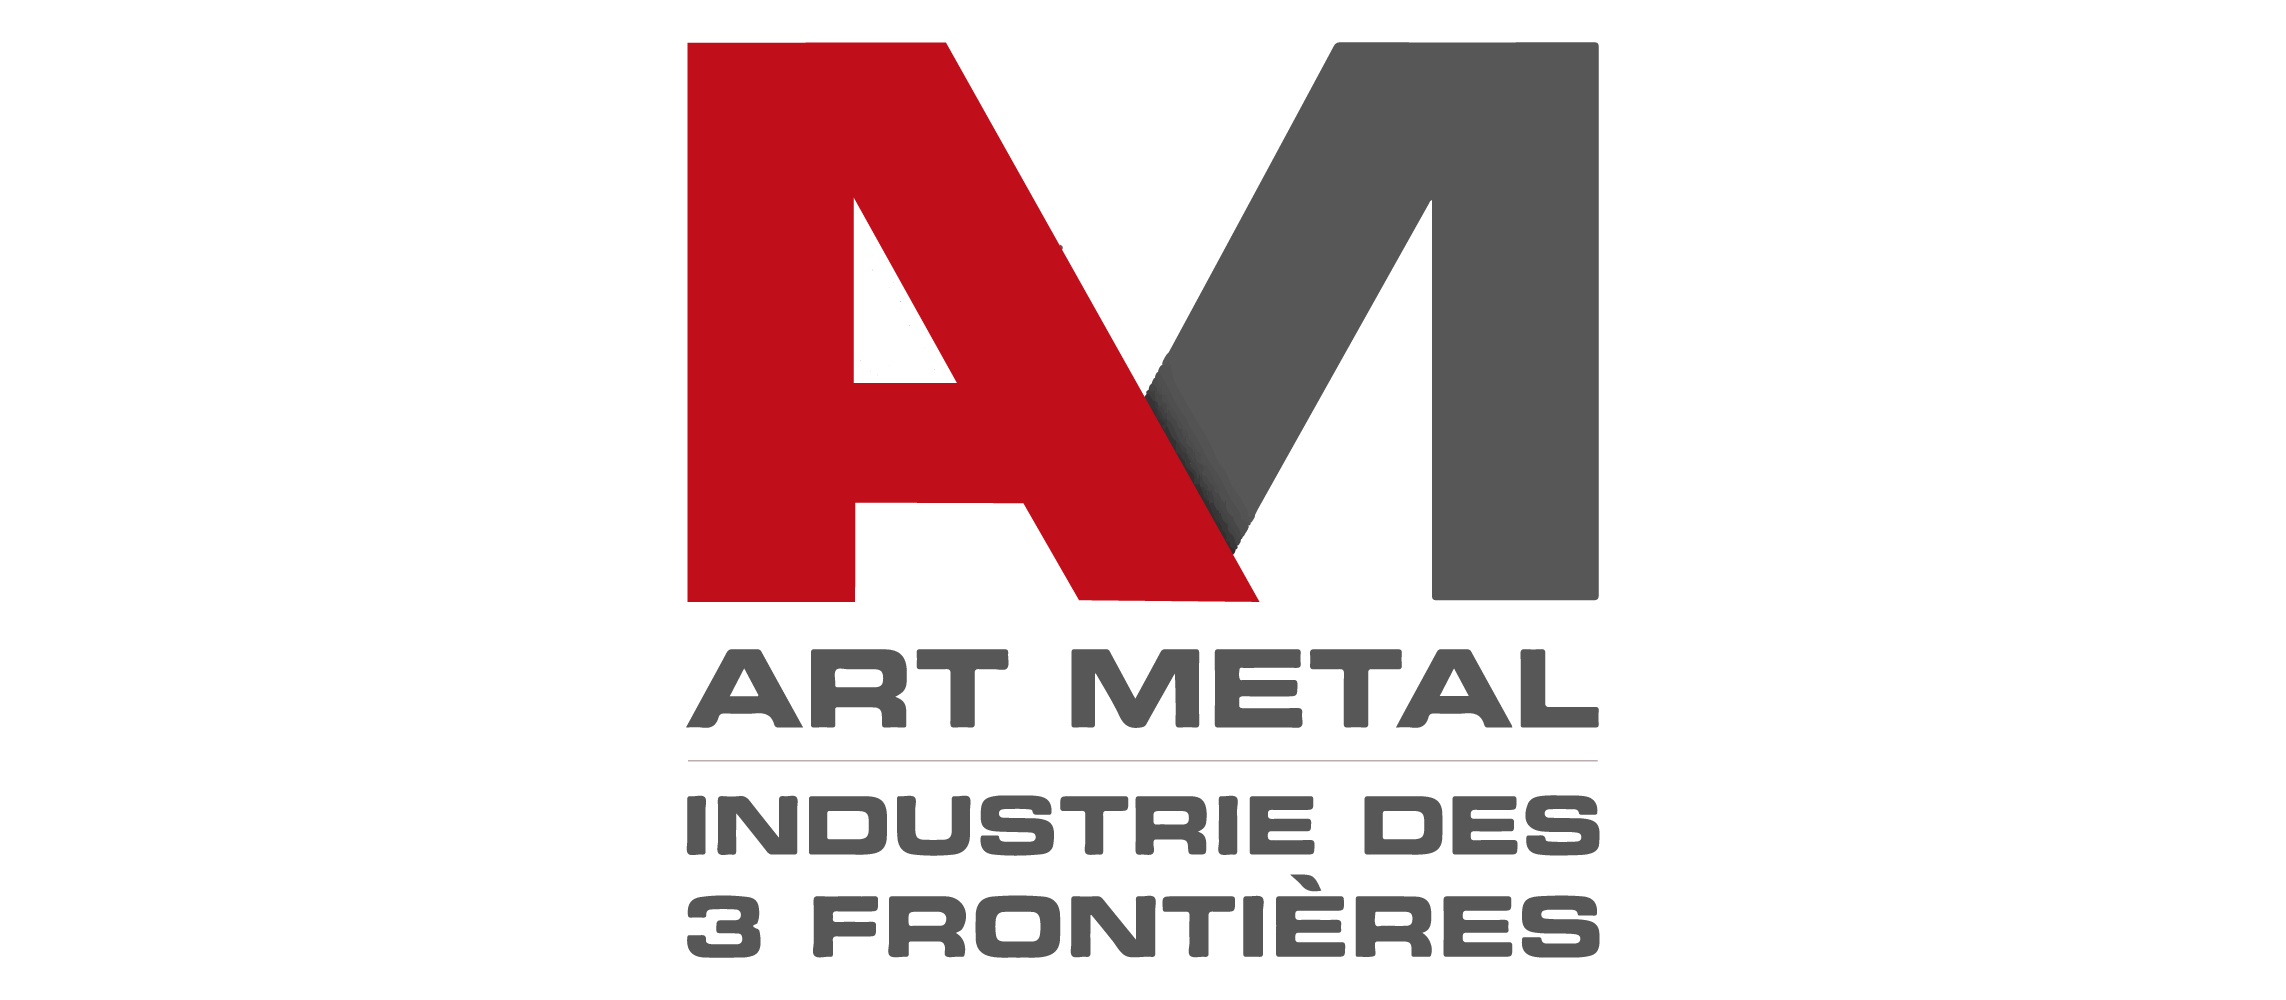 logo-ART METAL INDUSTRIE DES 3 FRONTIERES